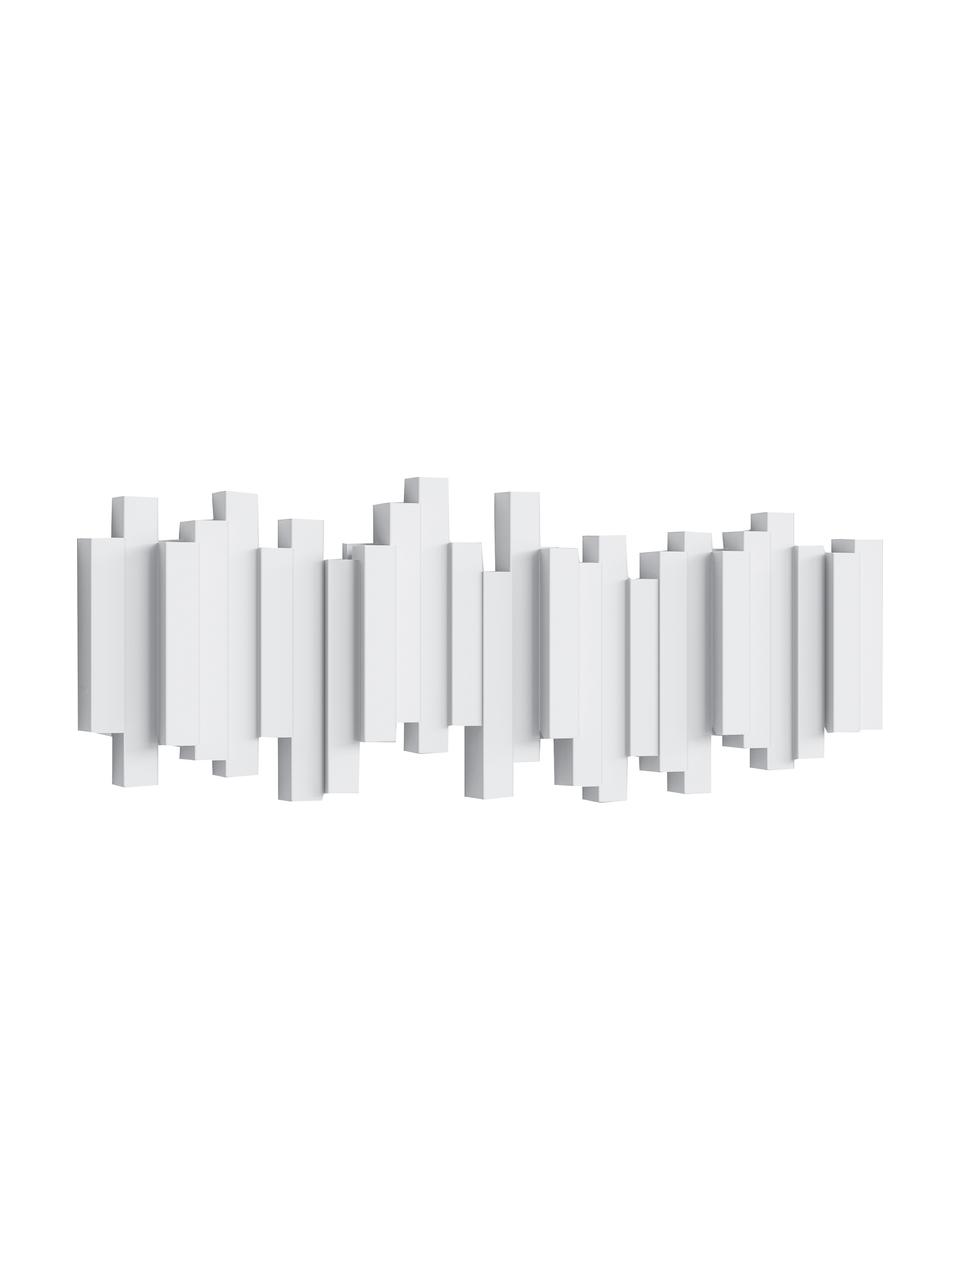 Garderobenhaken mit Stäbchendesign in Weiß, Kunststoff, Weiß, B 48 x H 18 cm